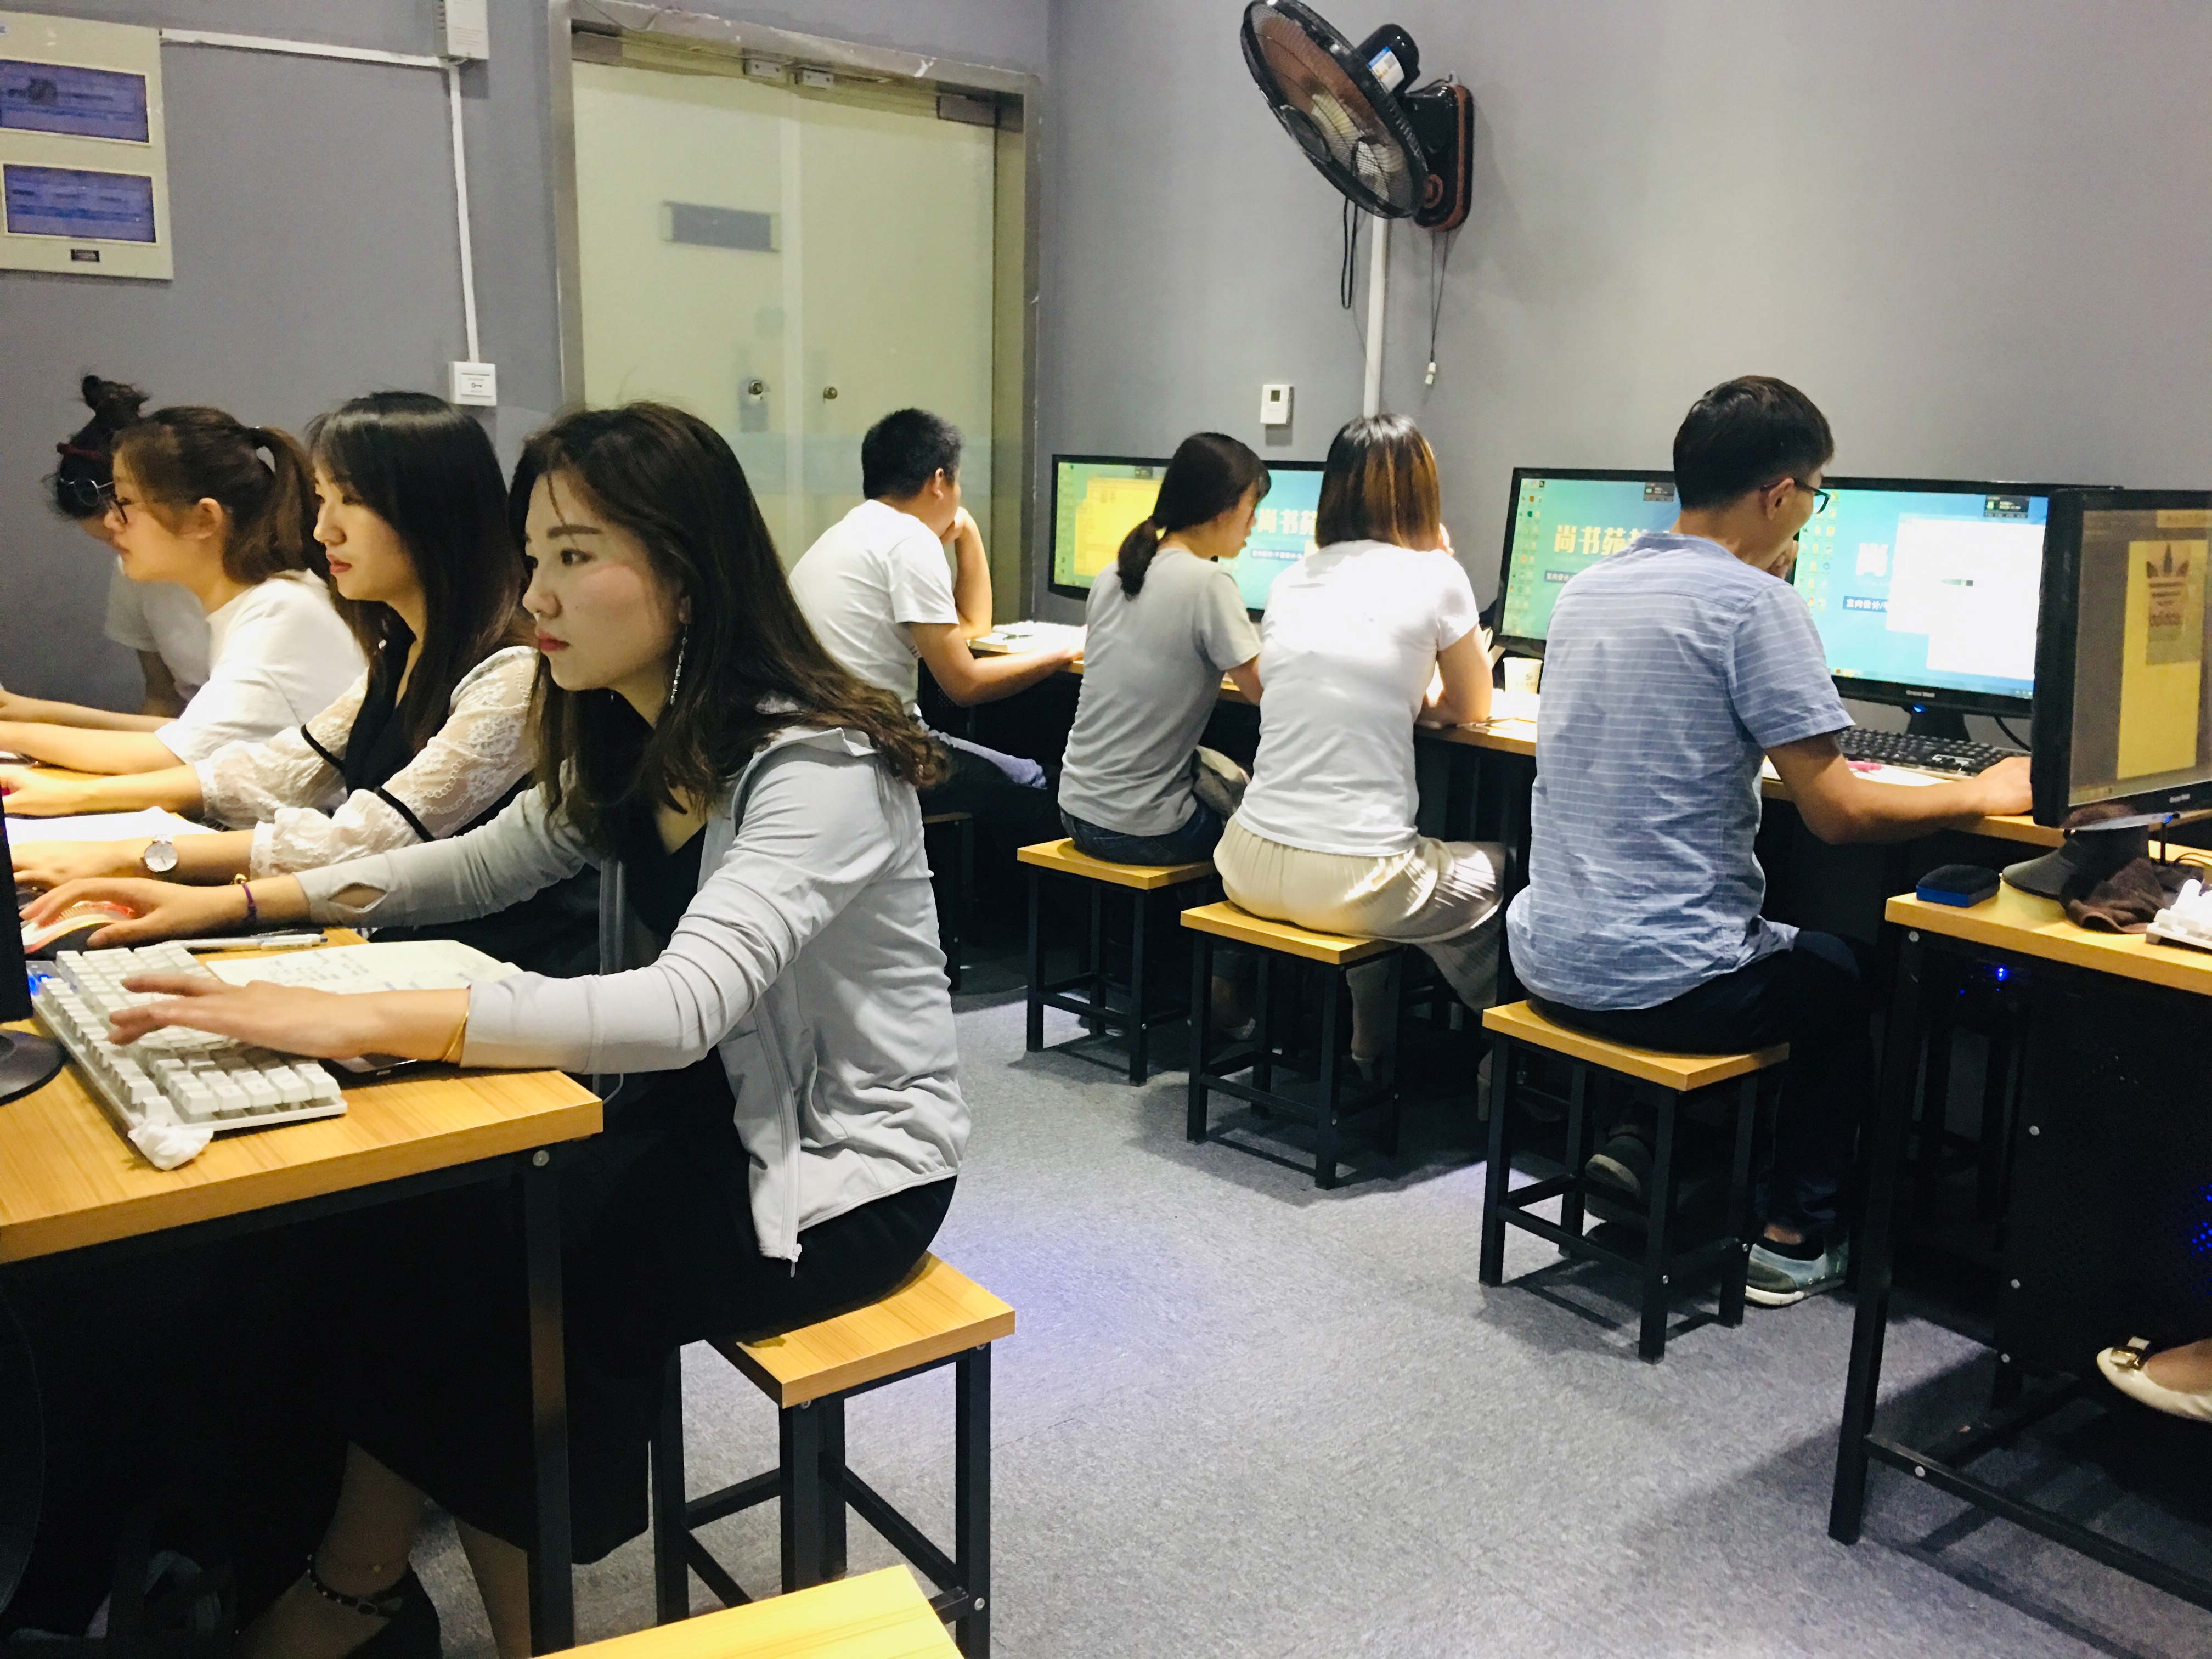 淮安学电脑办公 专业电脑培训班 来尚书苑电脑培训中心